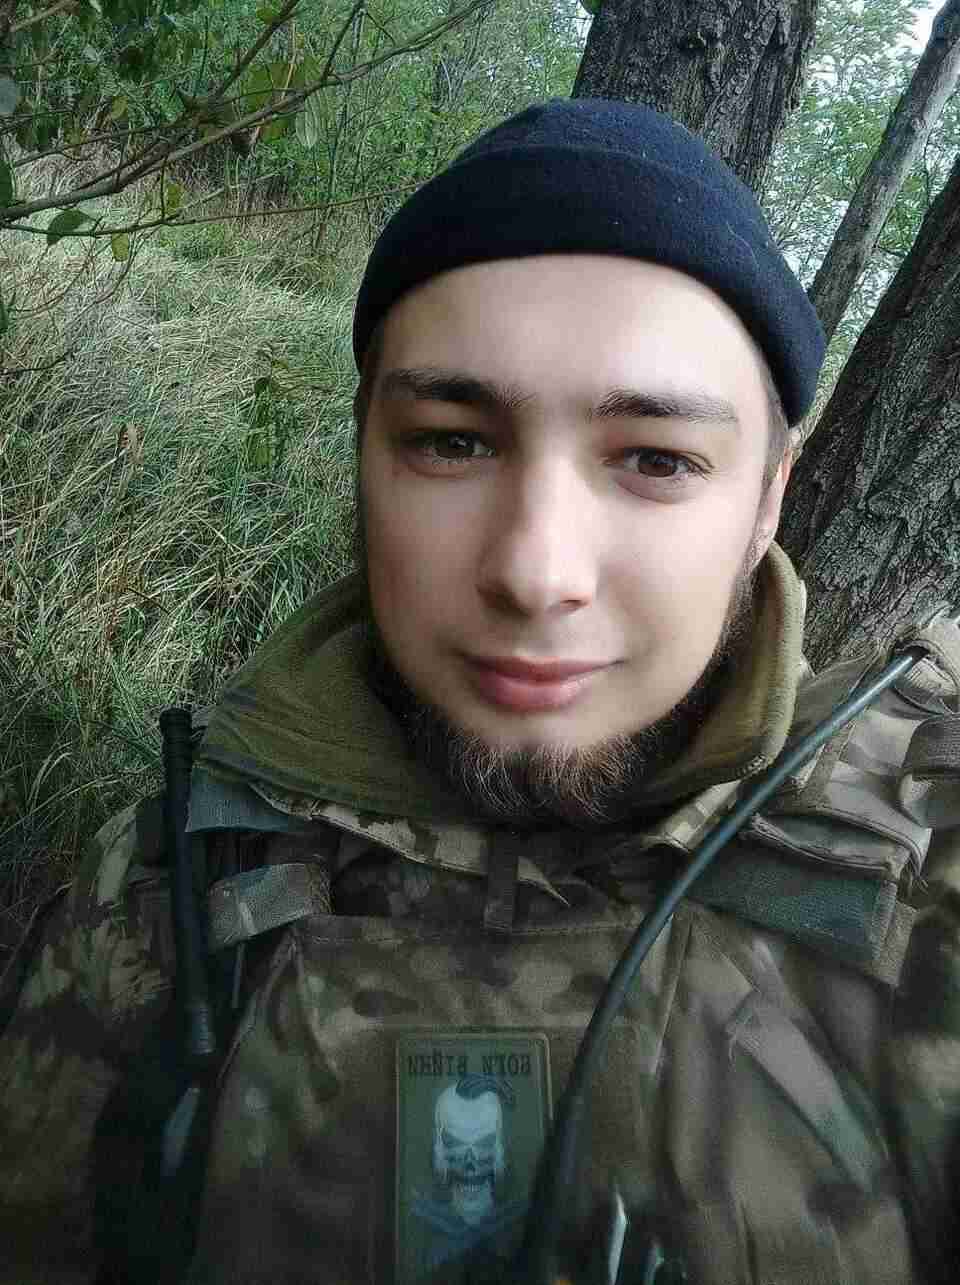 Стало відомо про загибель професійного військового, молодого офіцера з Львівщини Назара Бодняка